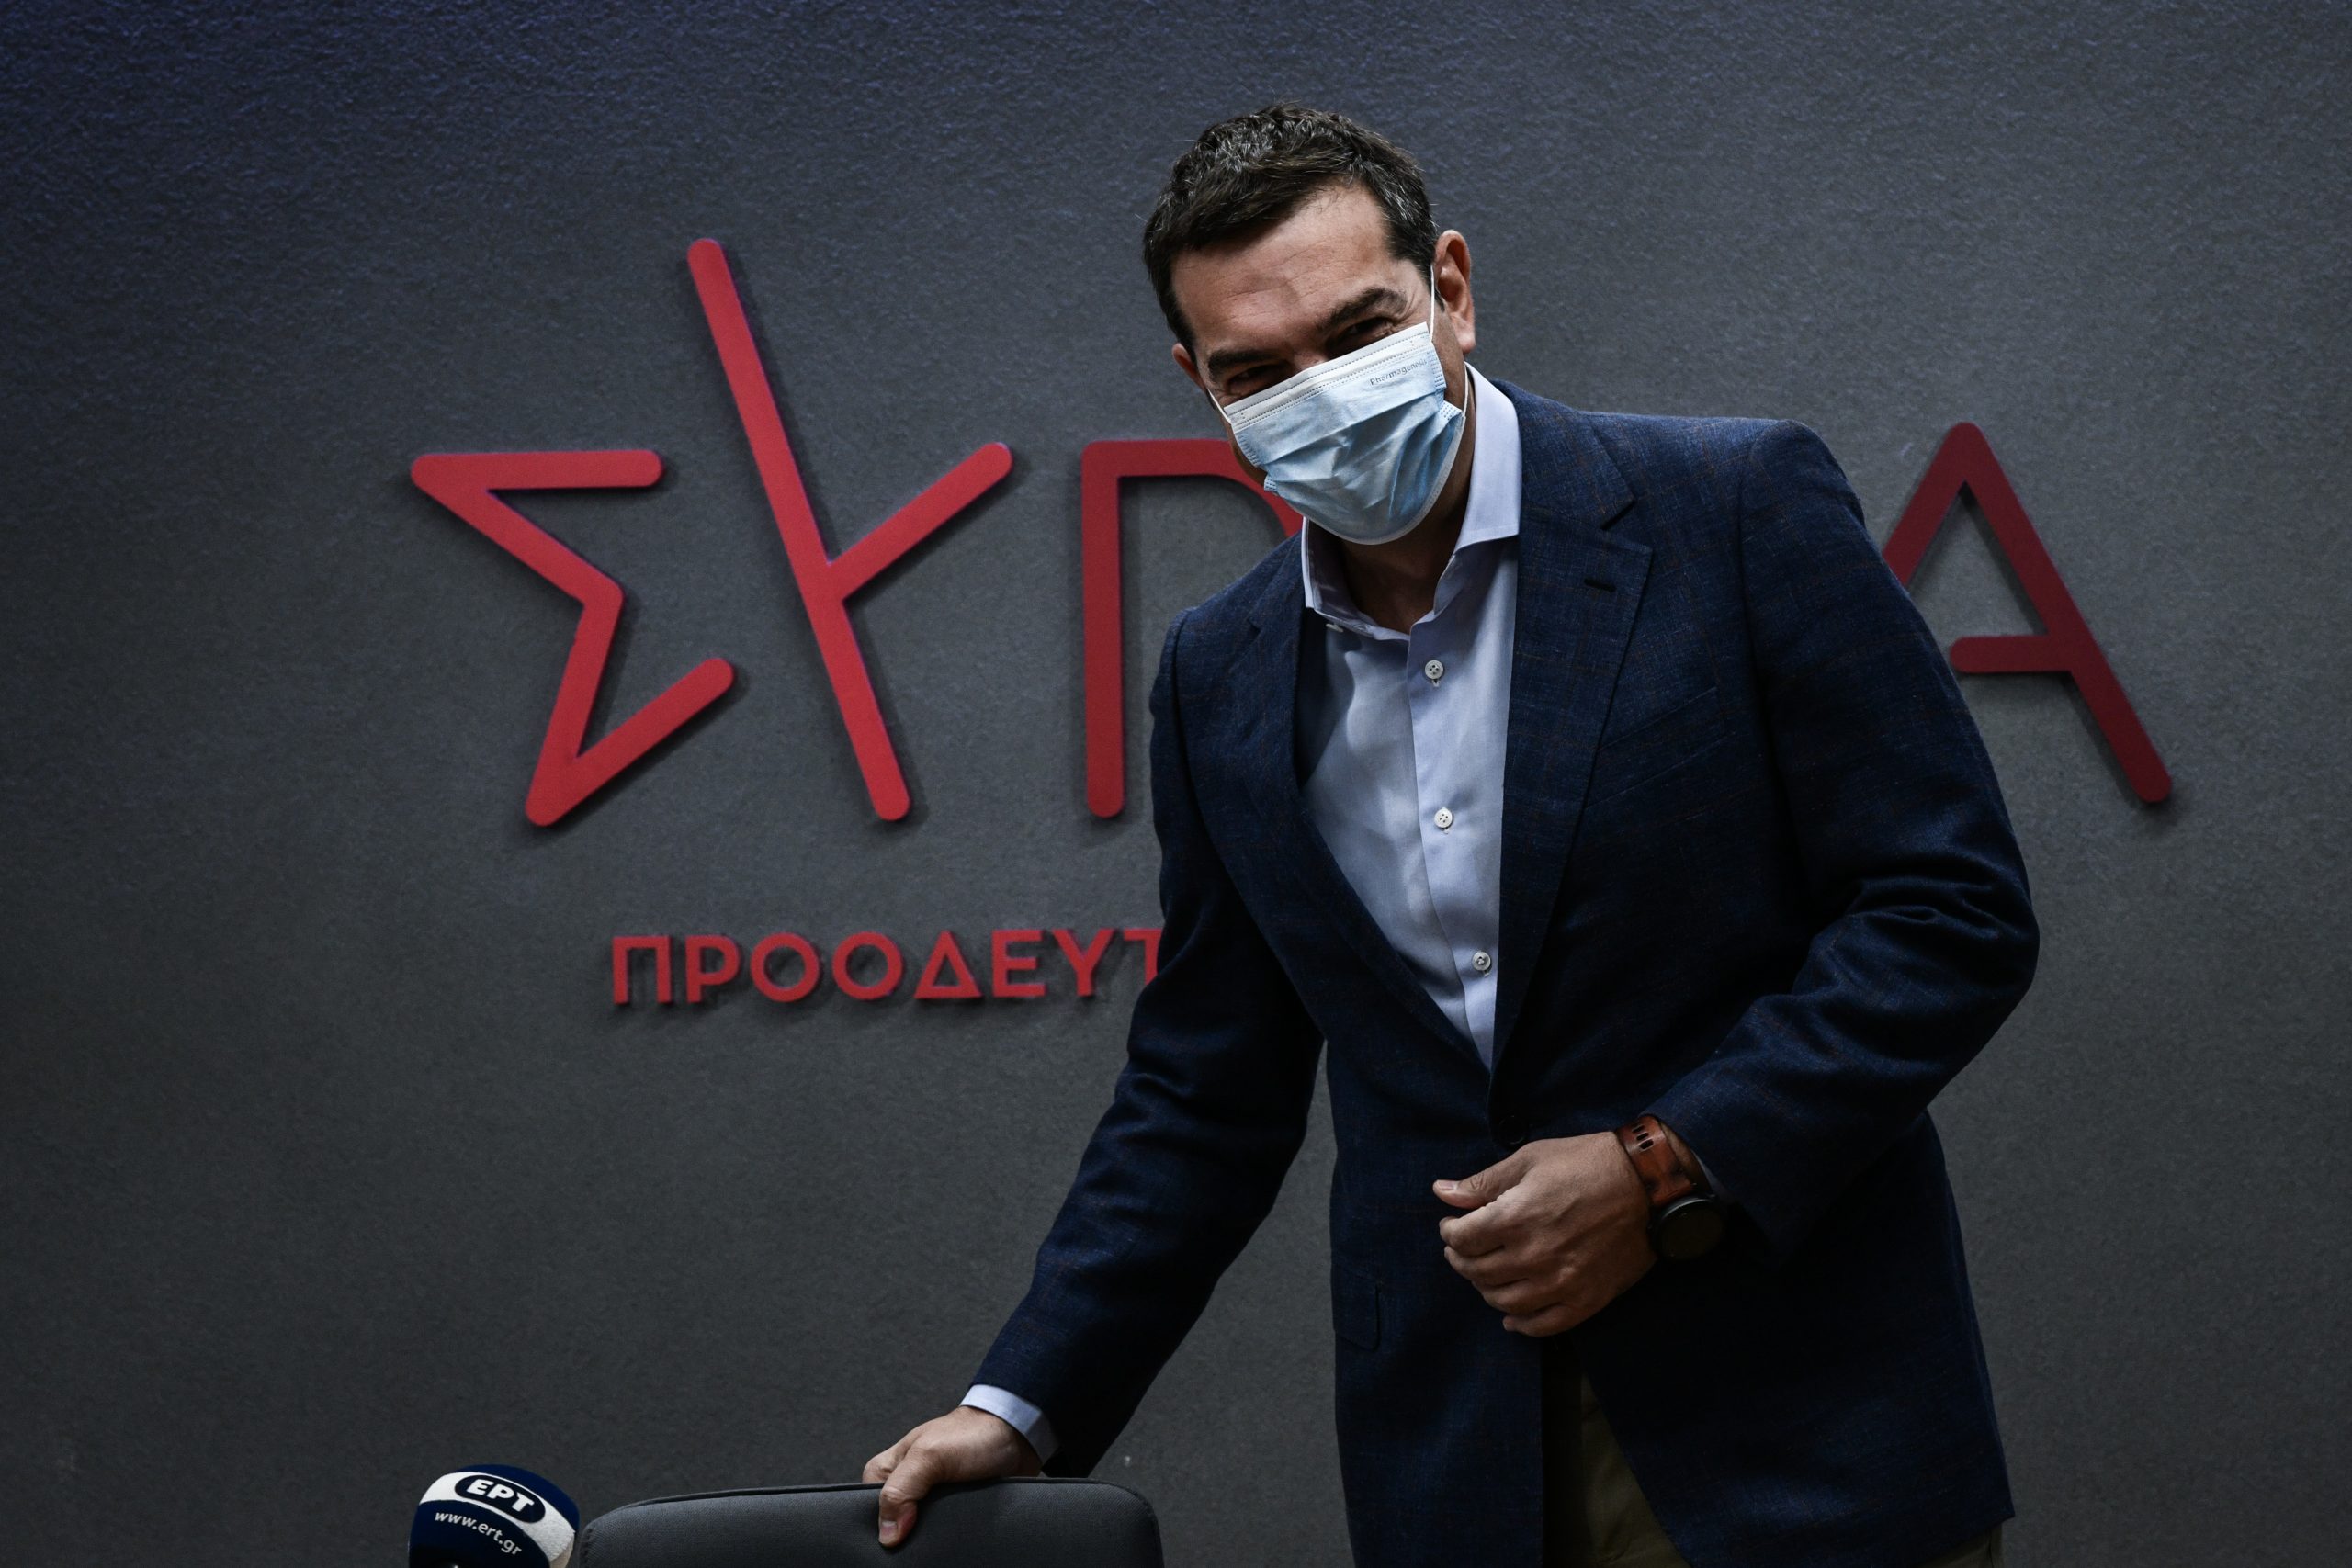 ΣΥΡΙΖΑ: Από το κόμμα στη μεγάλη παράταξη – Η σαφής εντολή Τσίπρα και οι εξελίξεις